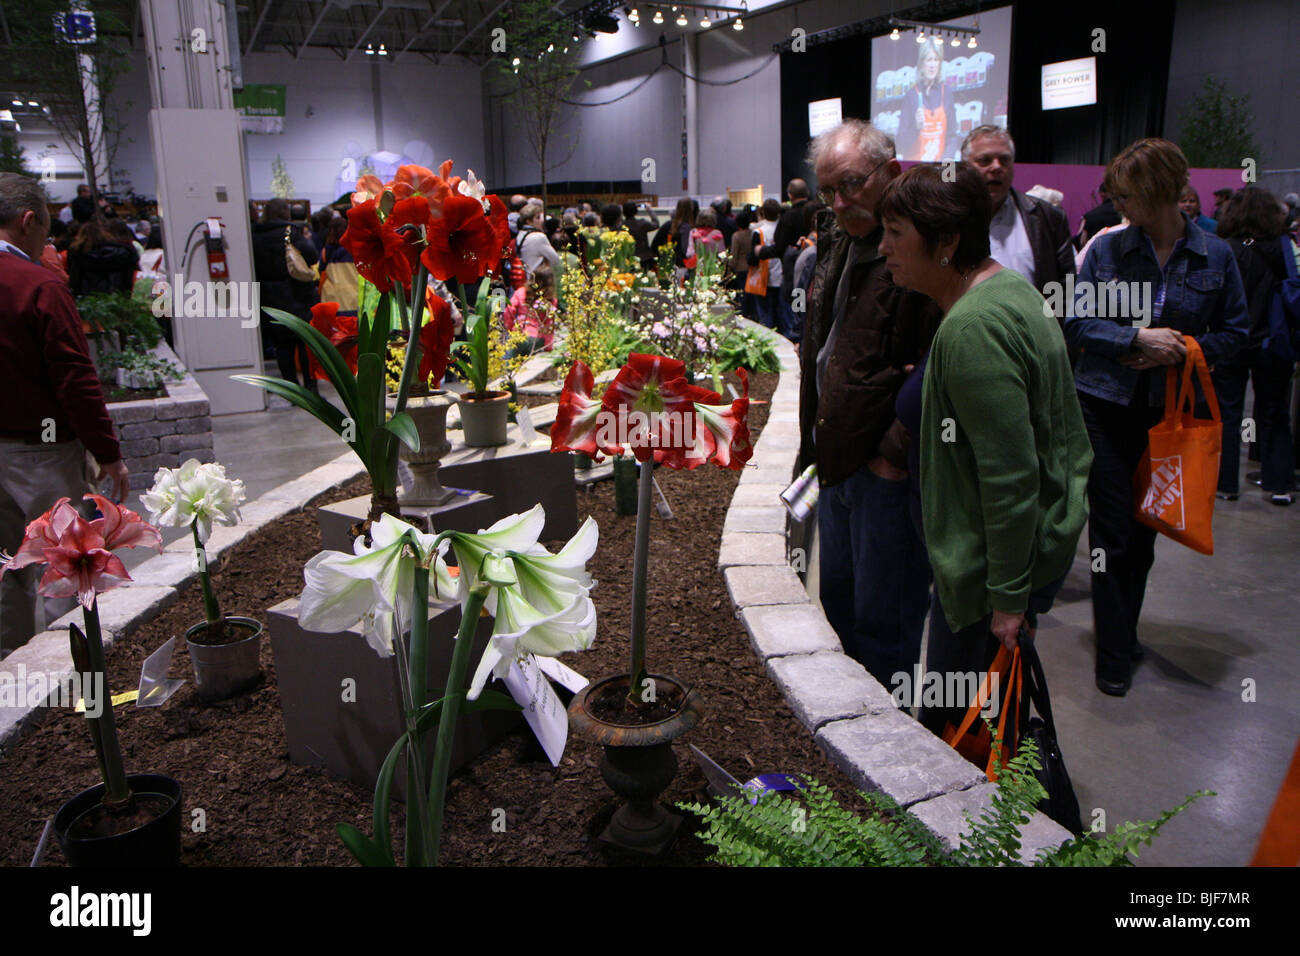 L'observation des visiteurs visiteurs affichage fleur plante plantes fleurs foule le sol people walking Banque D'Images